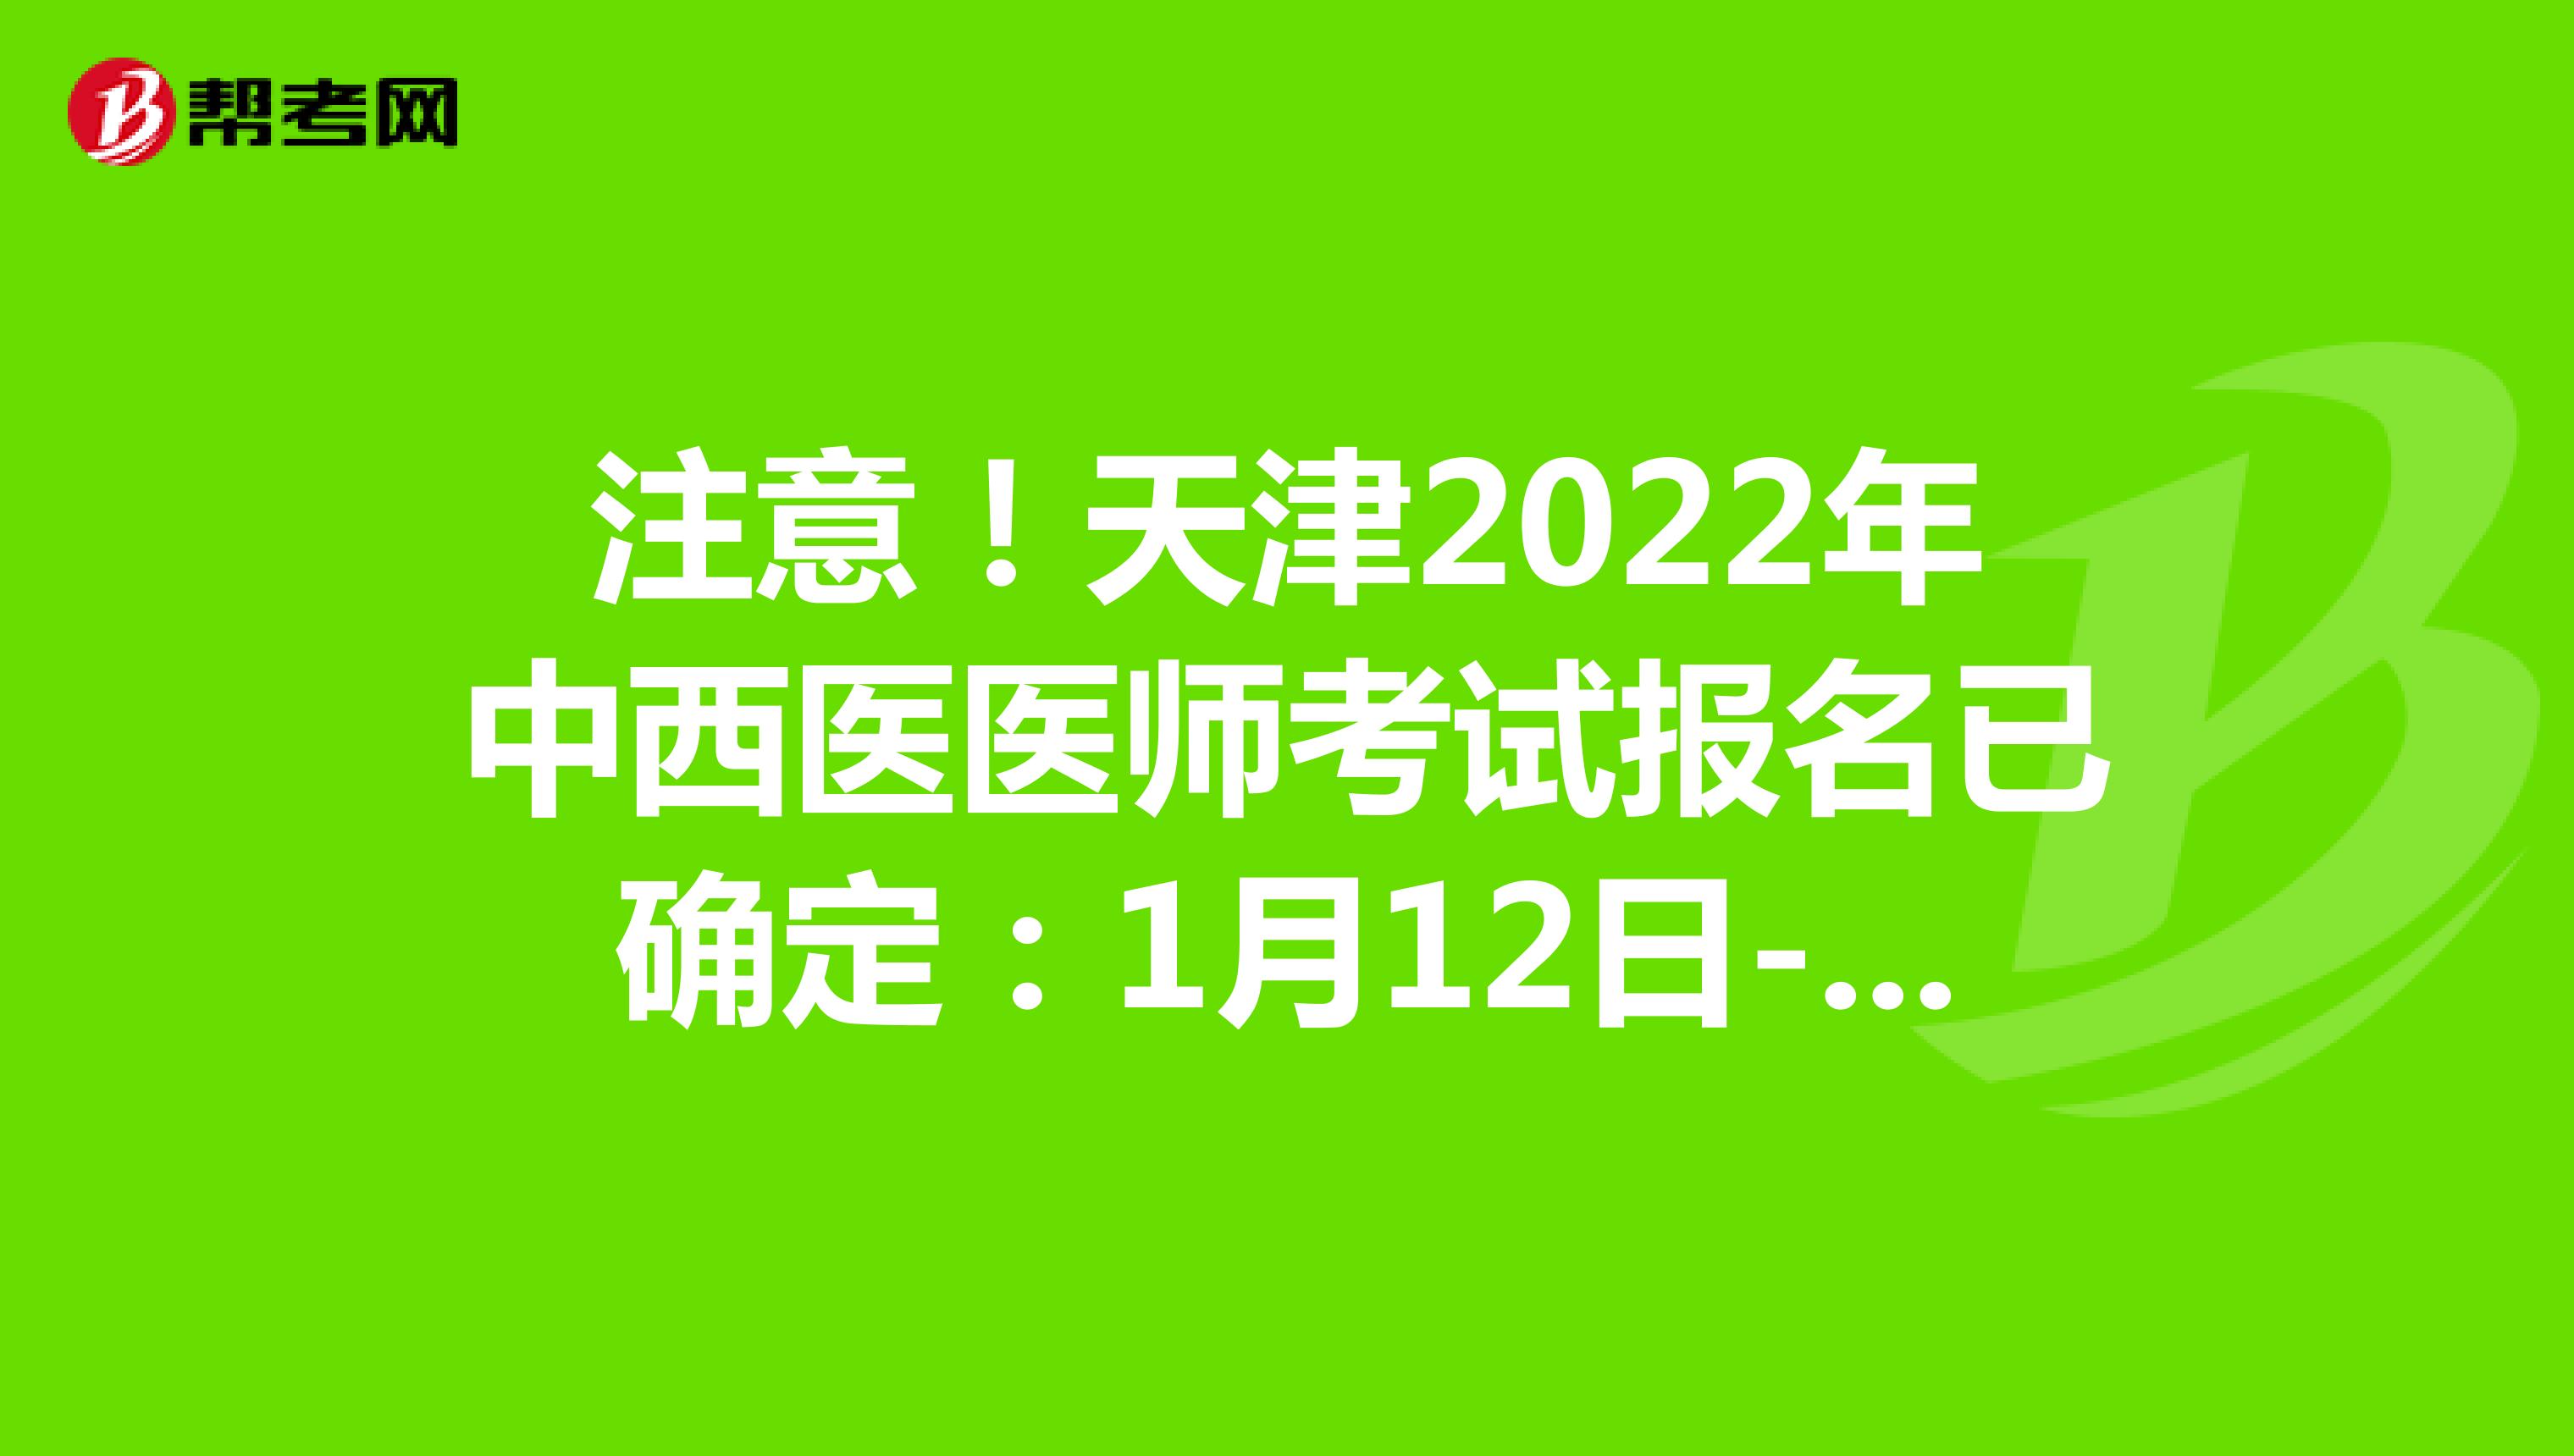 注意！天津2022年中西医医师考试报名已确定：1月12日-1月25日